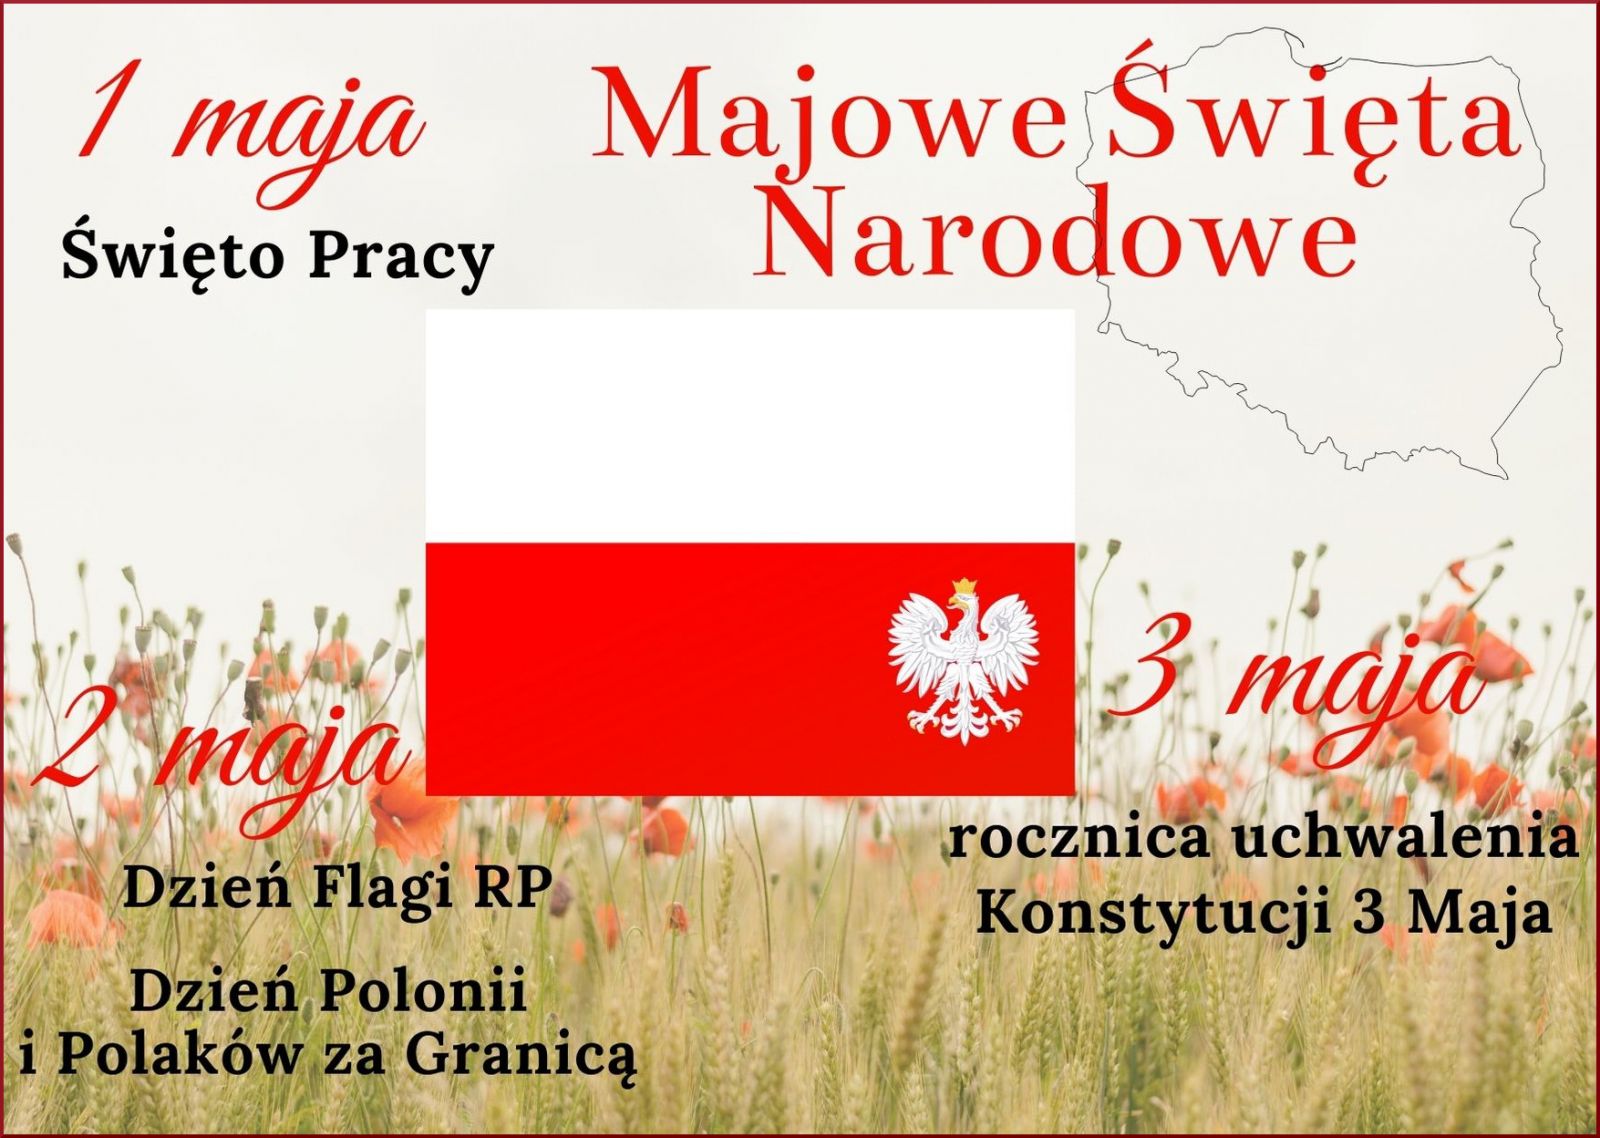 Zdjęcie plakatu infromującego o majowych świętach narodowych 1 maja (Święto Pracy), 2 maja (Dzień Flagi RP, Dzień Polonii i Polaków za Granicą), 3 maja (rocznica uchwalenia Konstytucji 3 Maja).